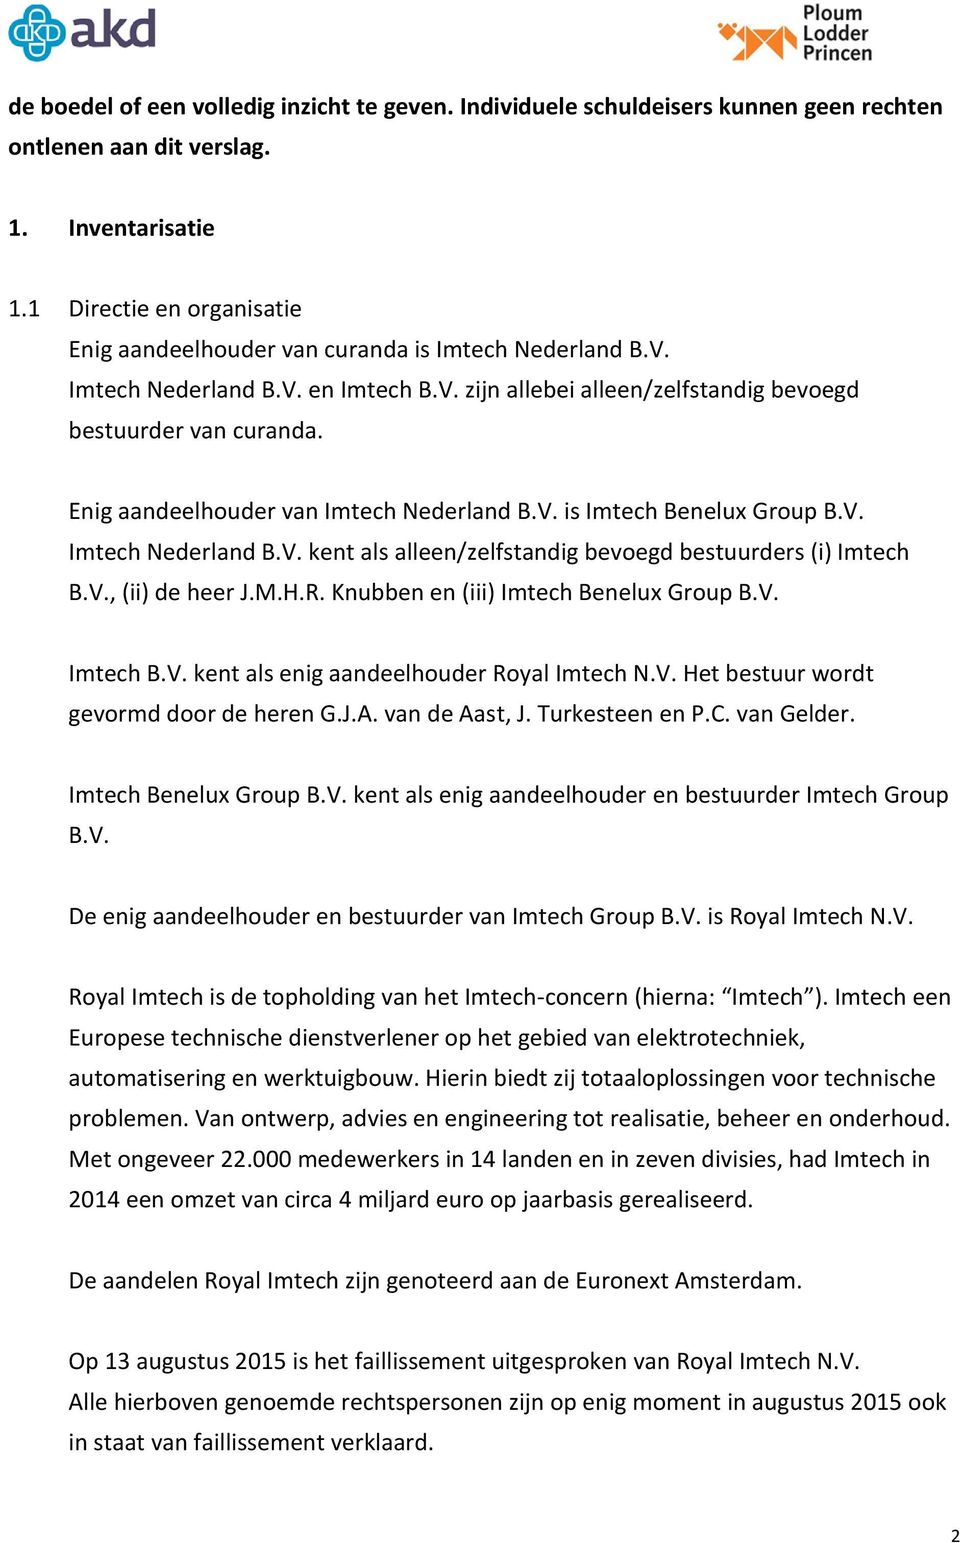 Enig aandeelhouder van Imtech Nederland B.V. is Imtech Benelux Group B.V. Imtech Nederland B.V. kent als alleen/zelfstandig bevoegd bestuurders (i) Imtech B.V., (ii) de heer J.M.H.R.